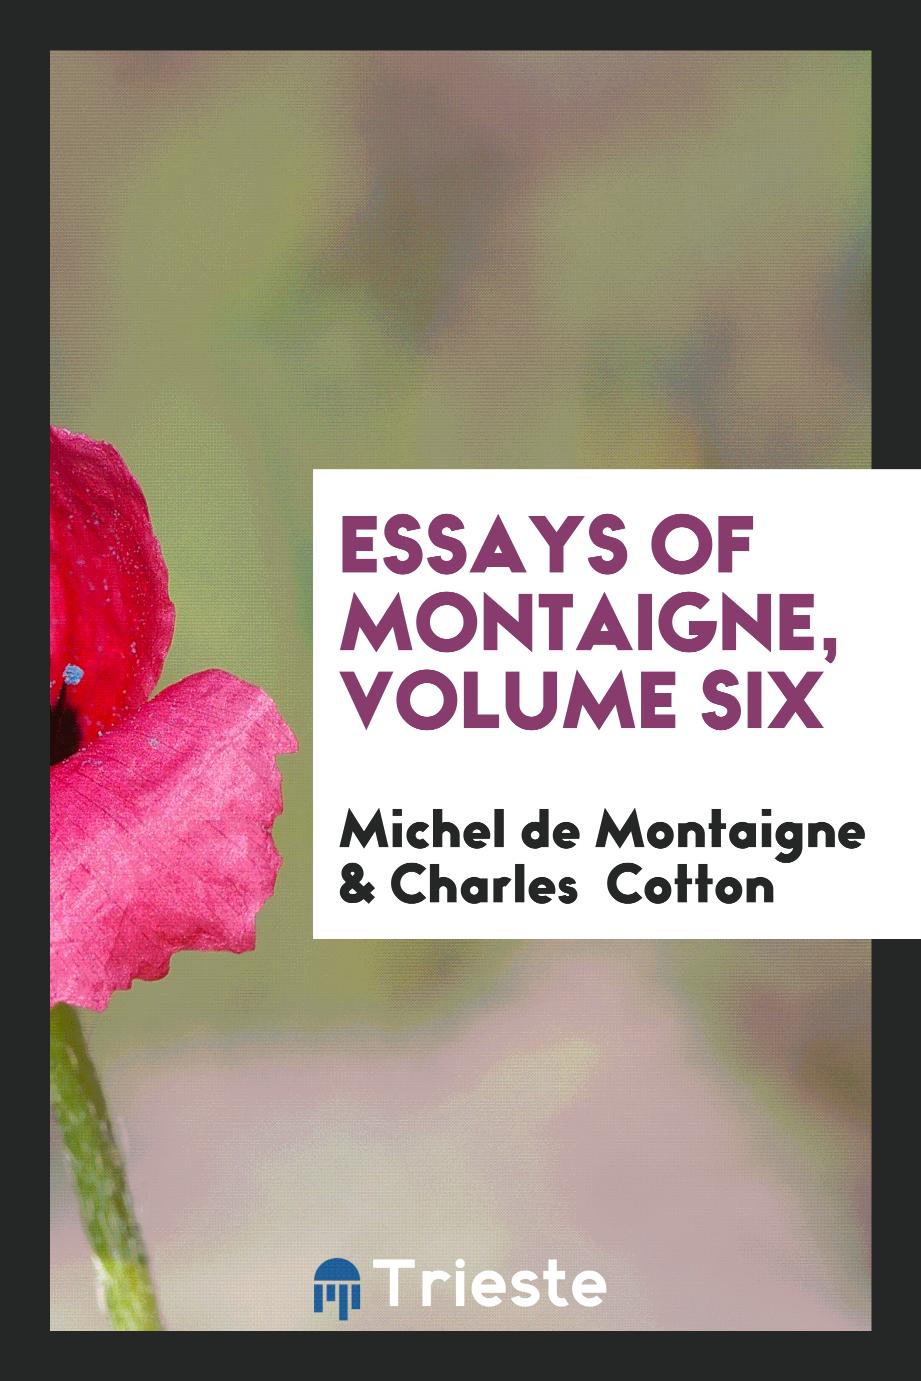 Essays of Montaigne, Volume Six